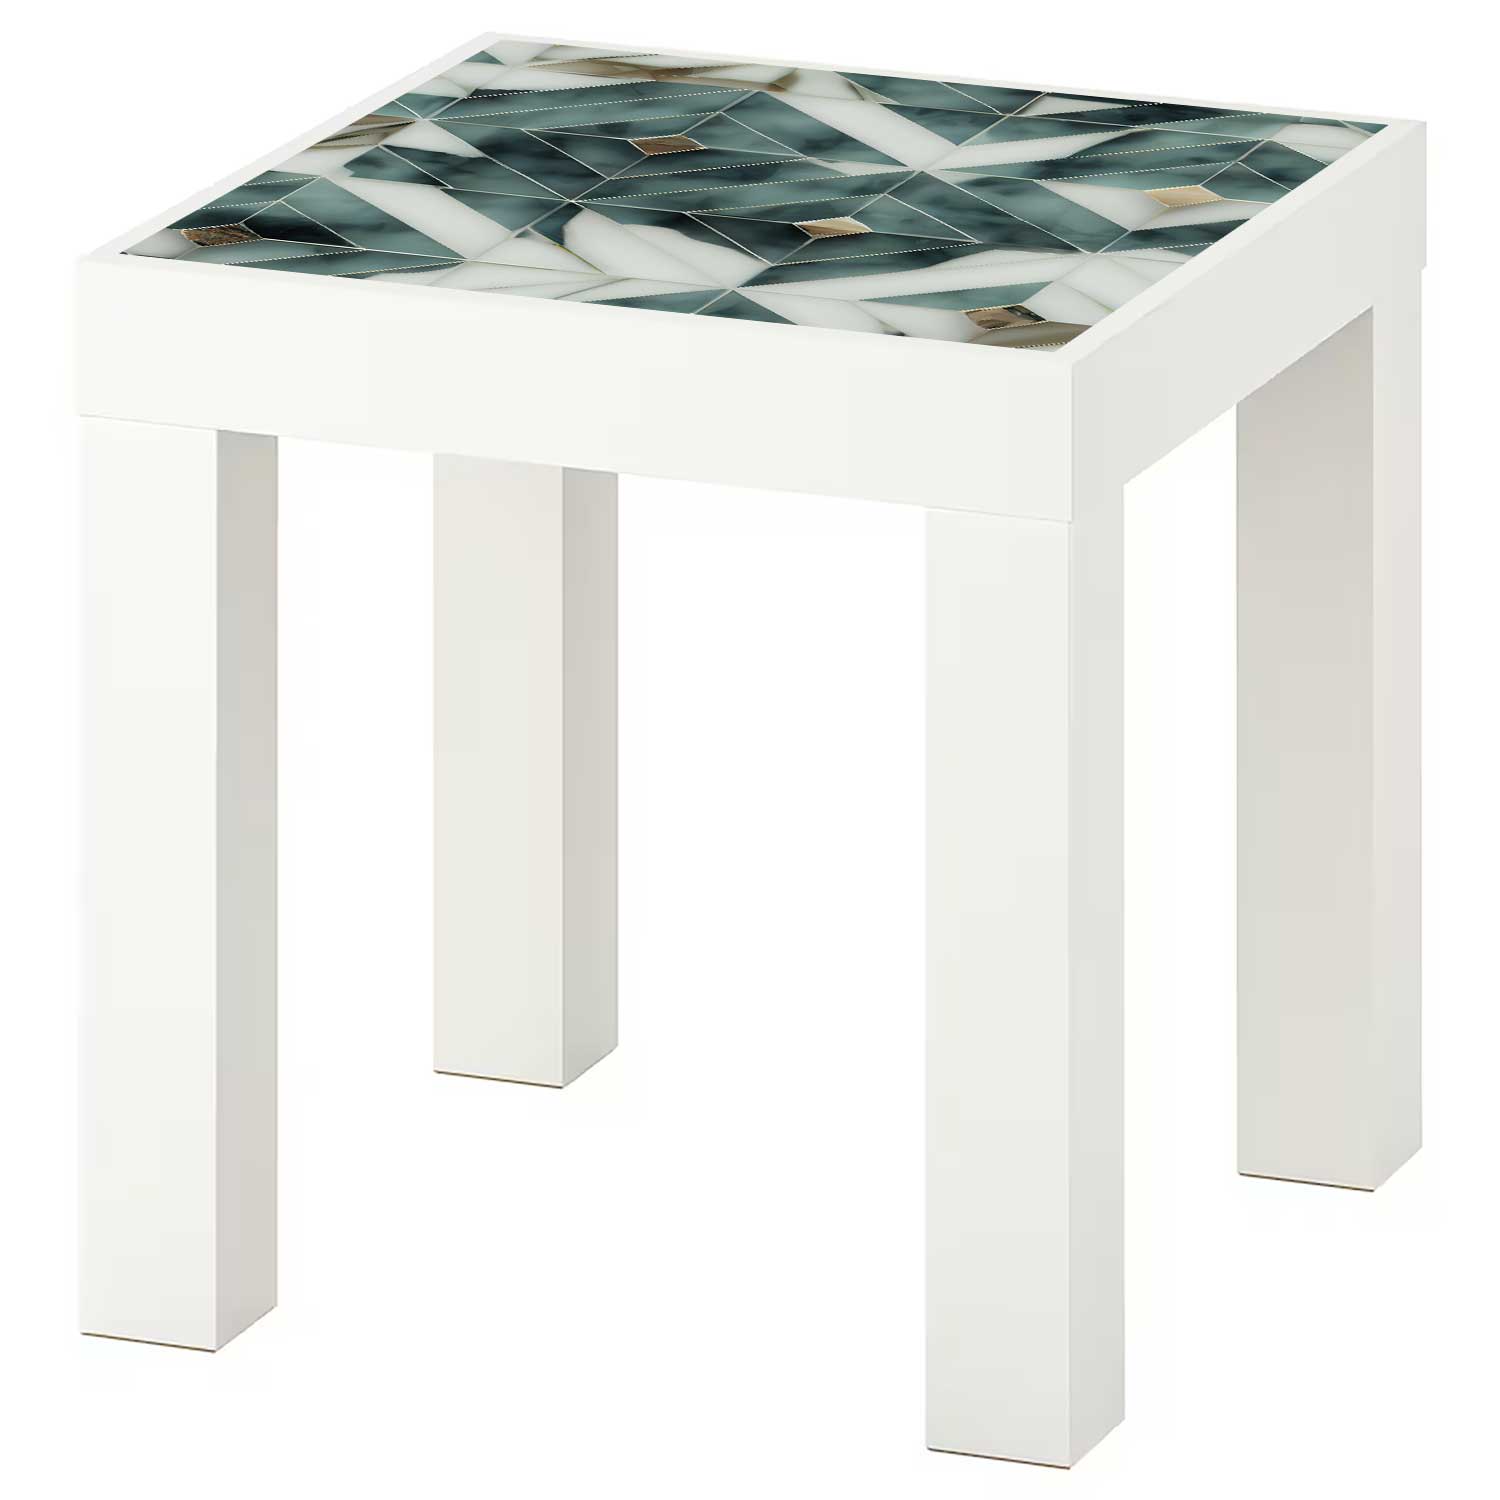 Möbelfolie für IKEA Lack Tisch 35x35 cm 'Marmor Fliesen'